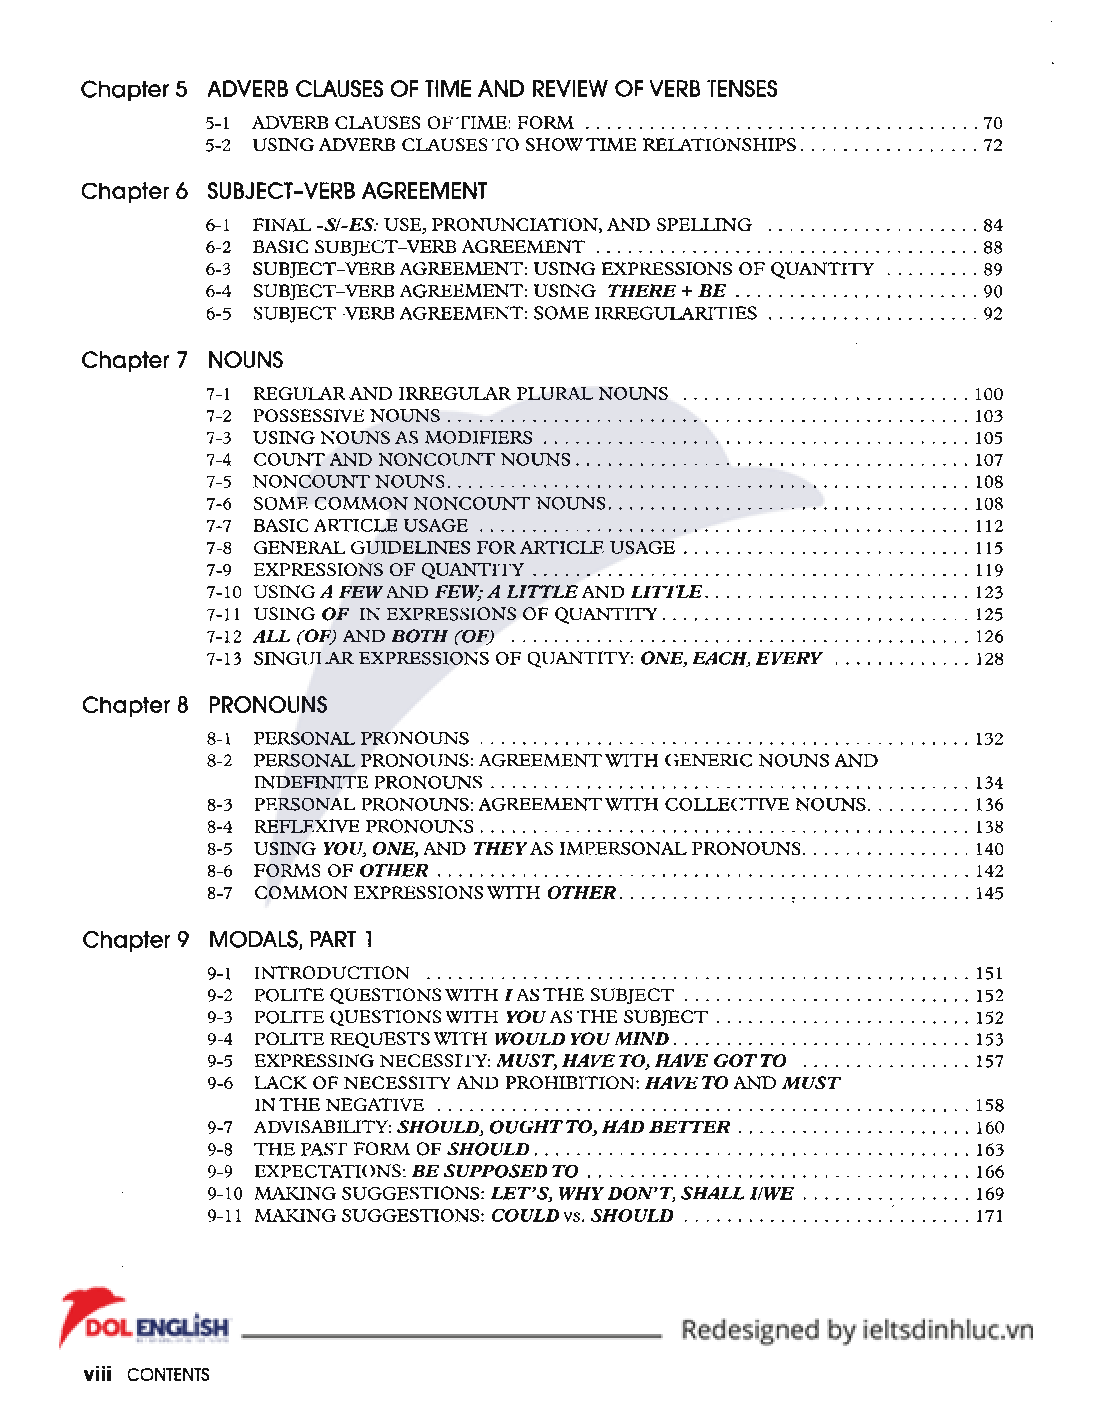 Sách Understanding and using English Grammar | Xem online, tải PDF miễn phí (trang 5)